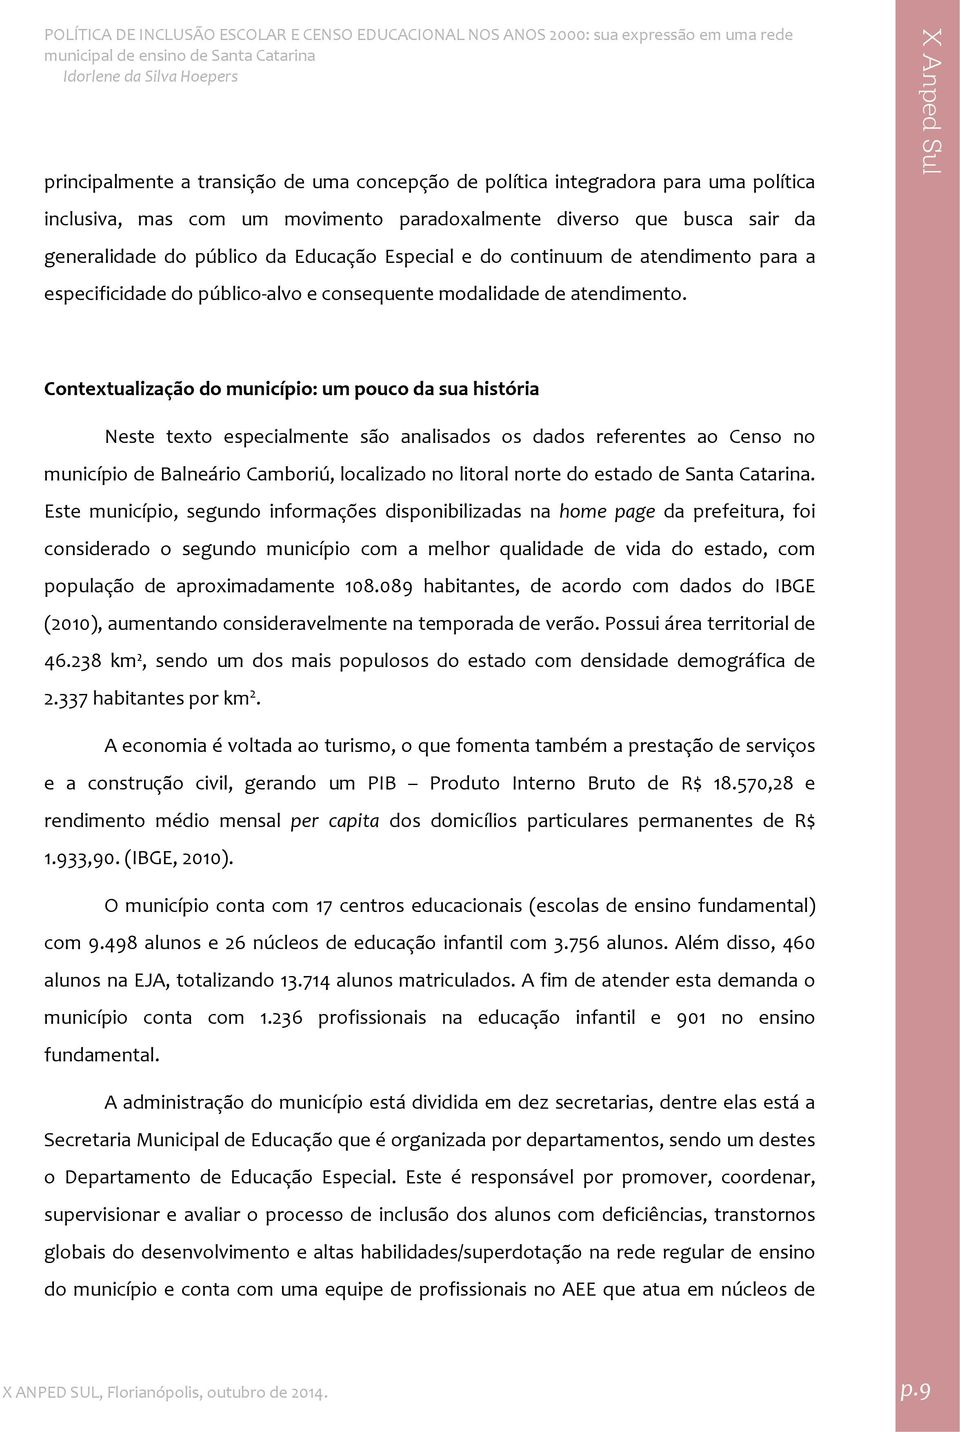 Contextualização do município: um pouco da sua história Neste texto especialmente são analisados os dados referentes ao Censo no município de Balneário Camboriú, localizado no litoral norte do estado